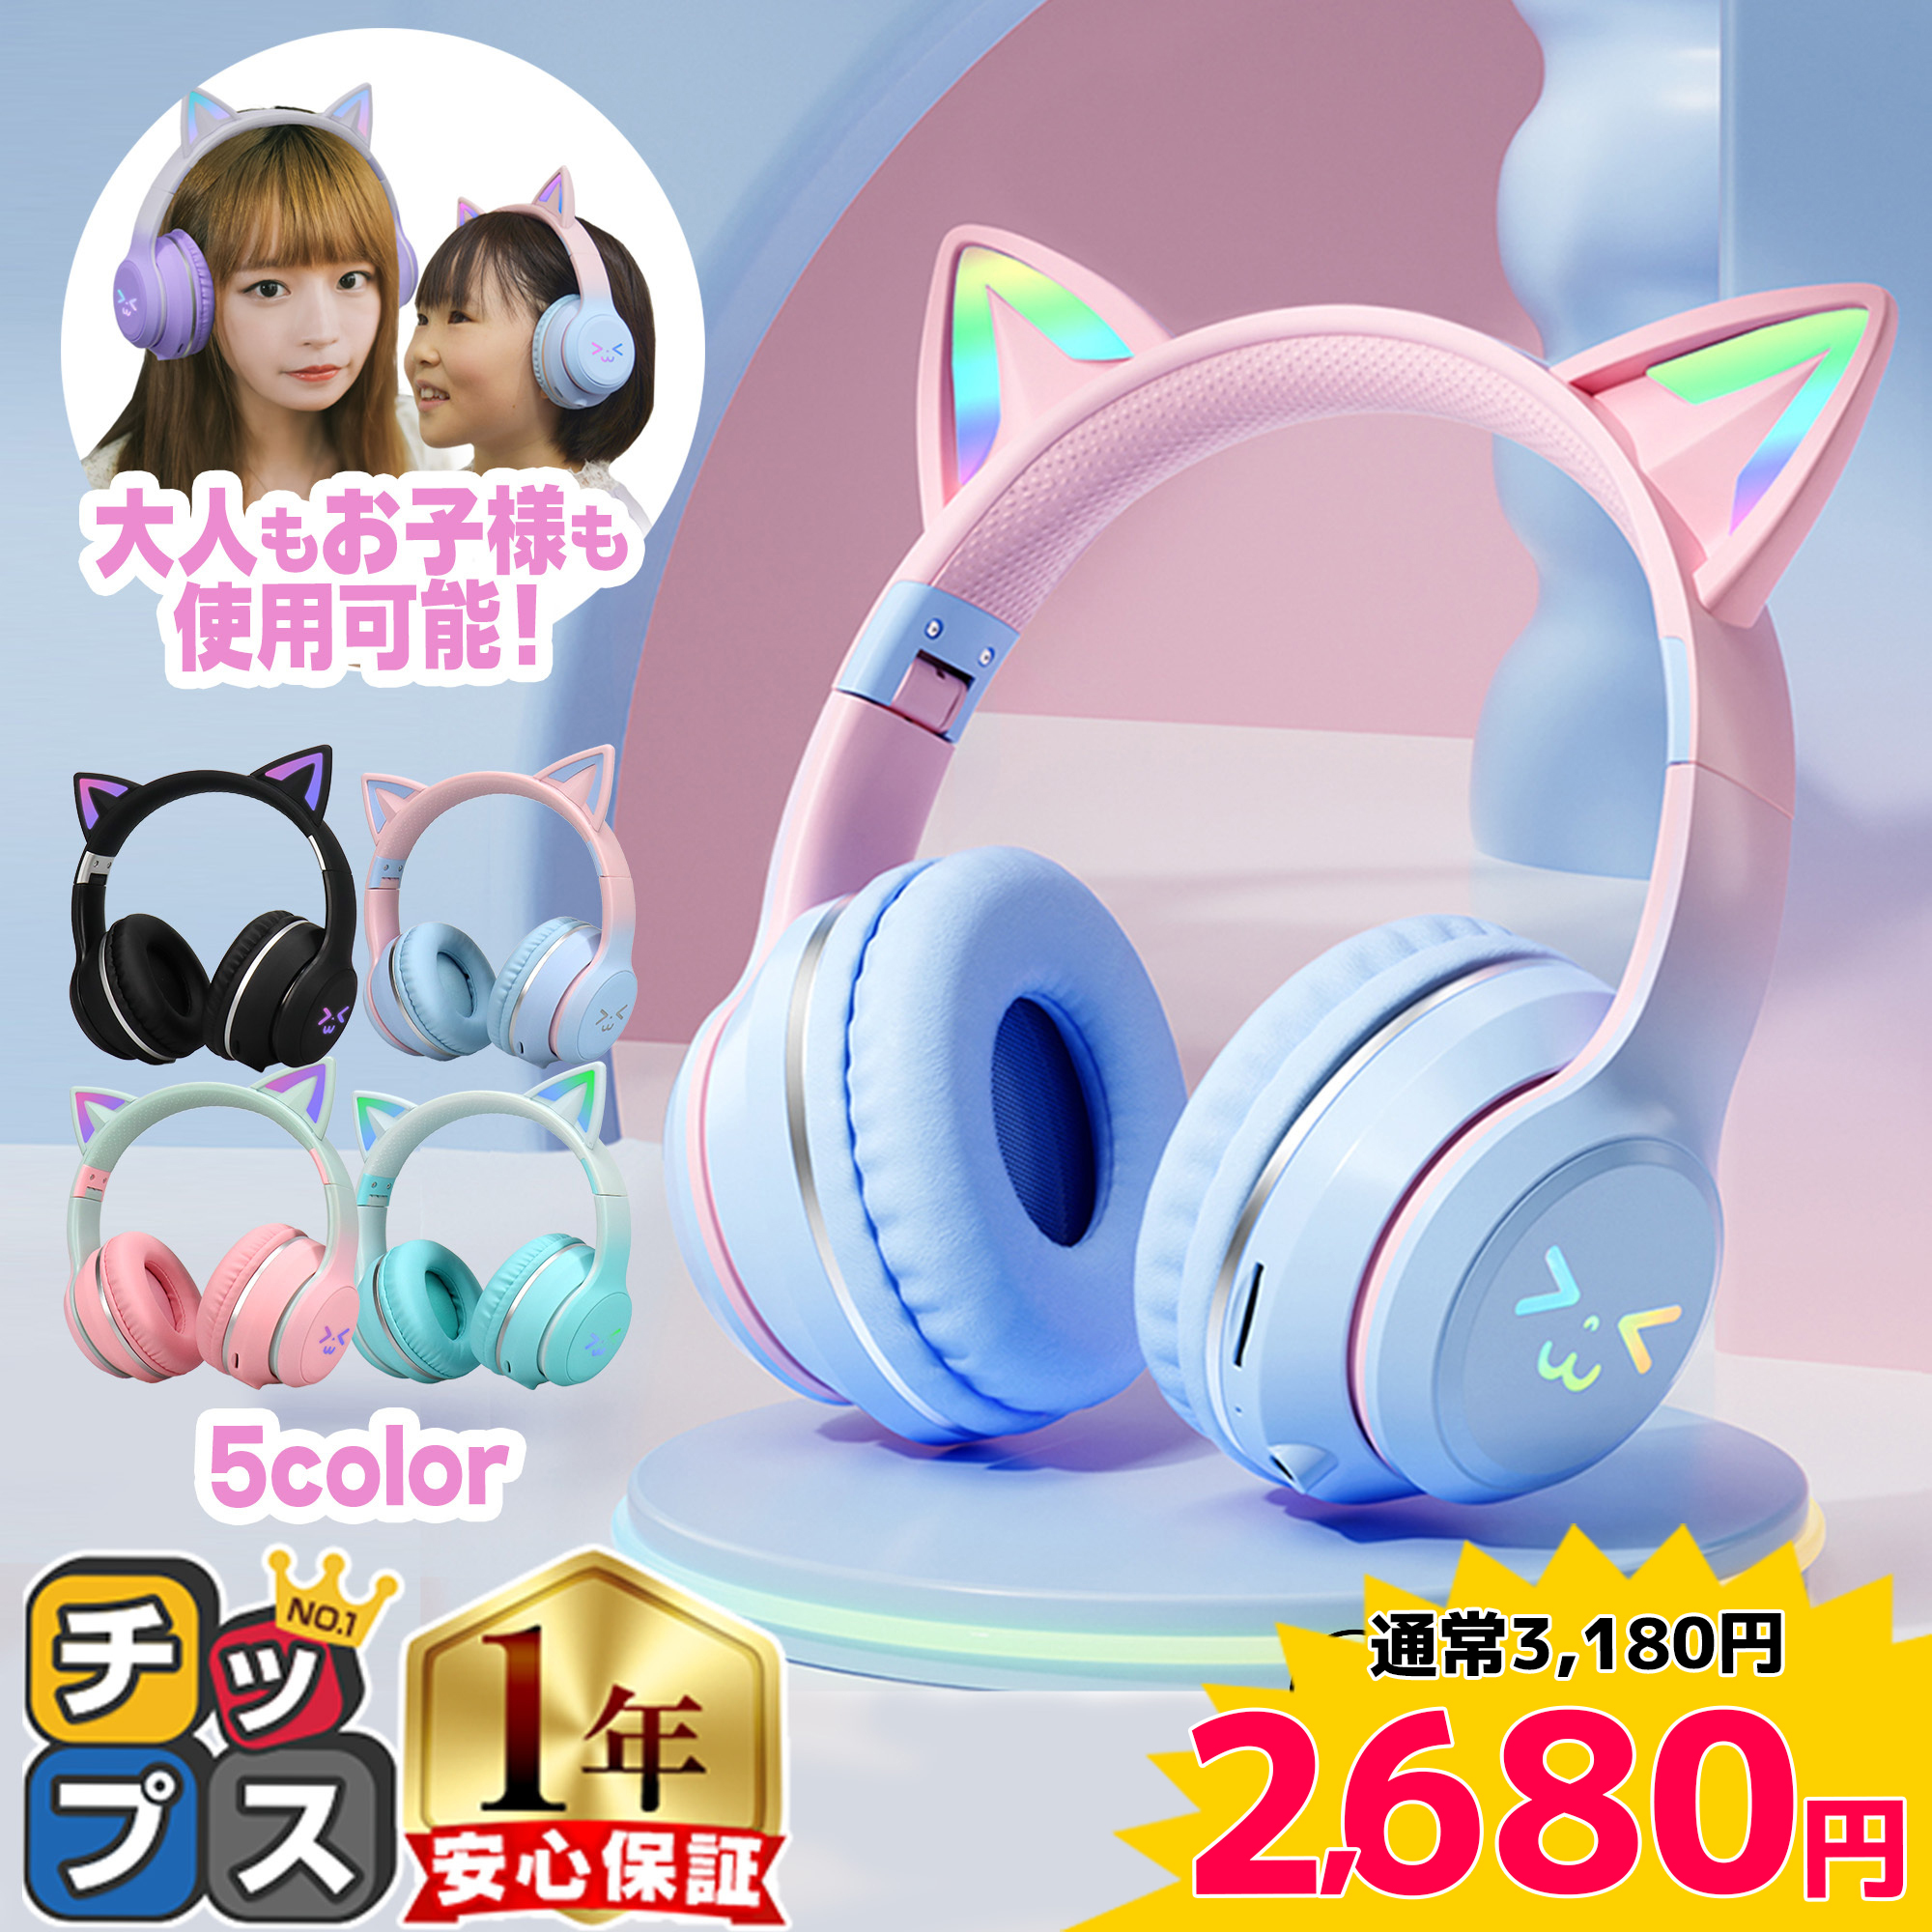 ワイヤレスヘッドフォン 猫耳 ヘッドホン ネコ耳ヘッドフォン Bluetooth5.1 ヘッドセット ゲーミング ワイヤレス マイク付き 子供用 大人用 ねこみみ 有線 無線